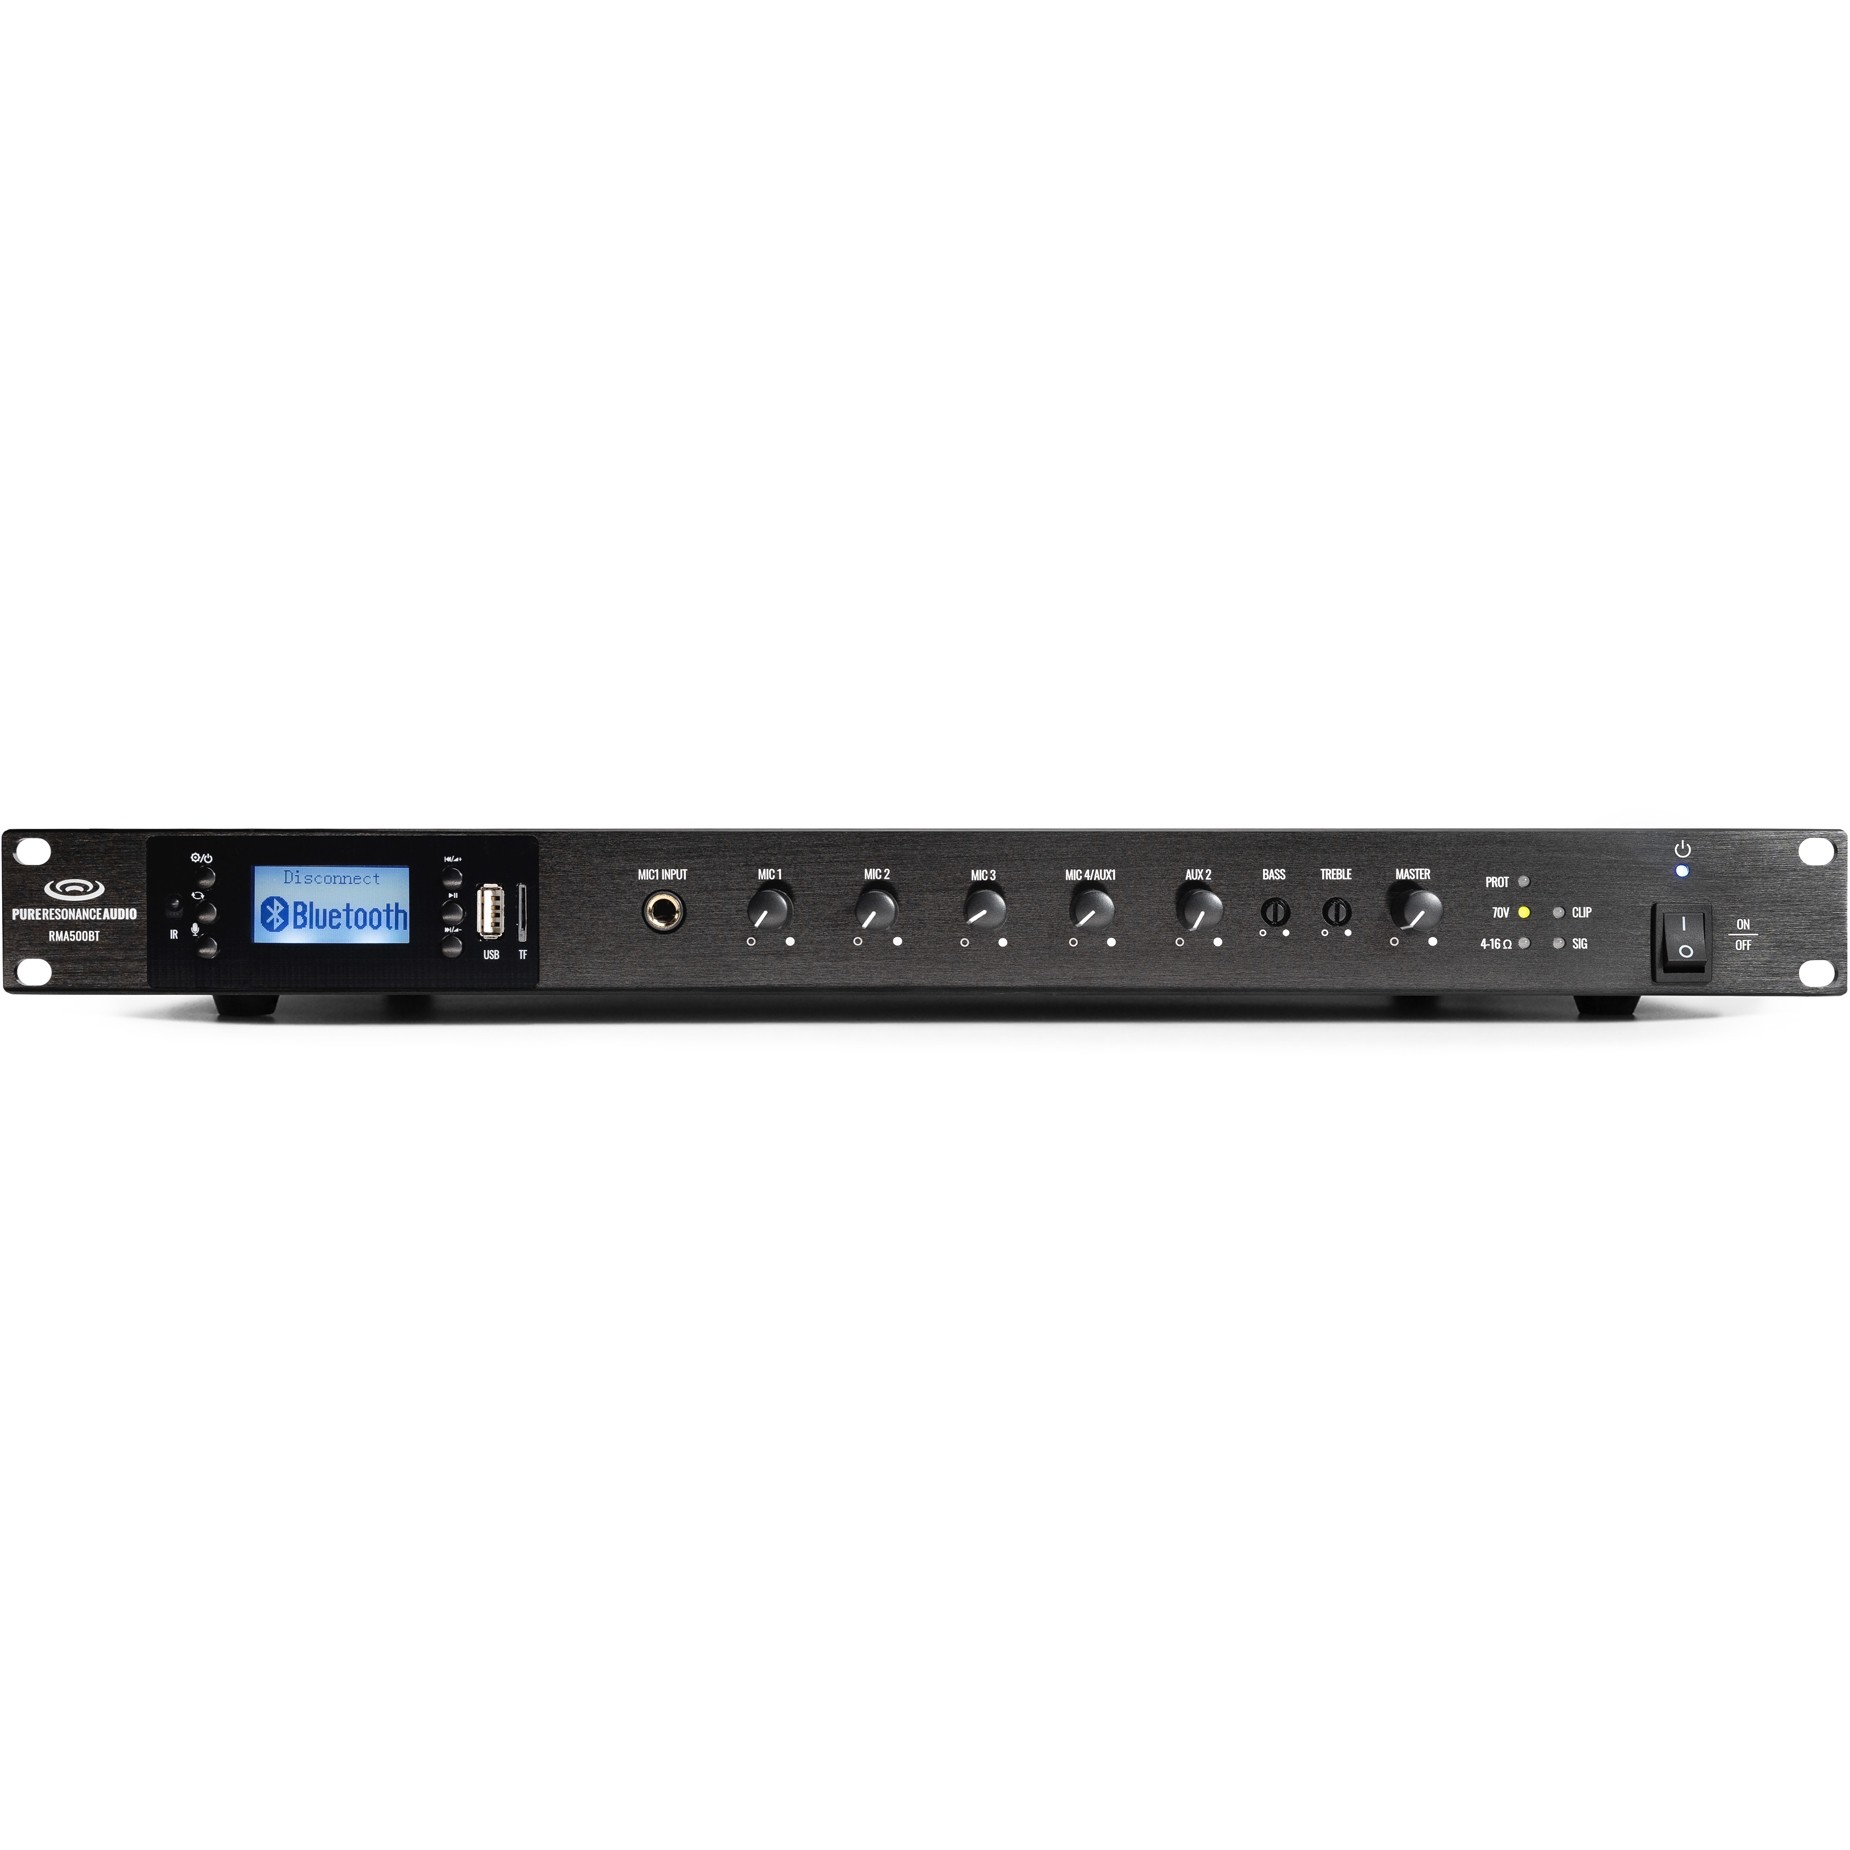 Pure Resonance Audio RMA500BT Rack Mount Mixer Amplifier